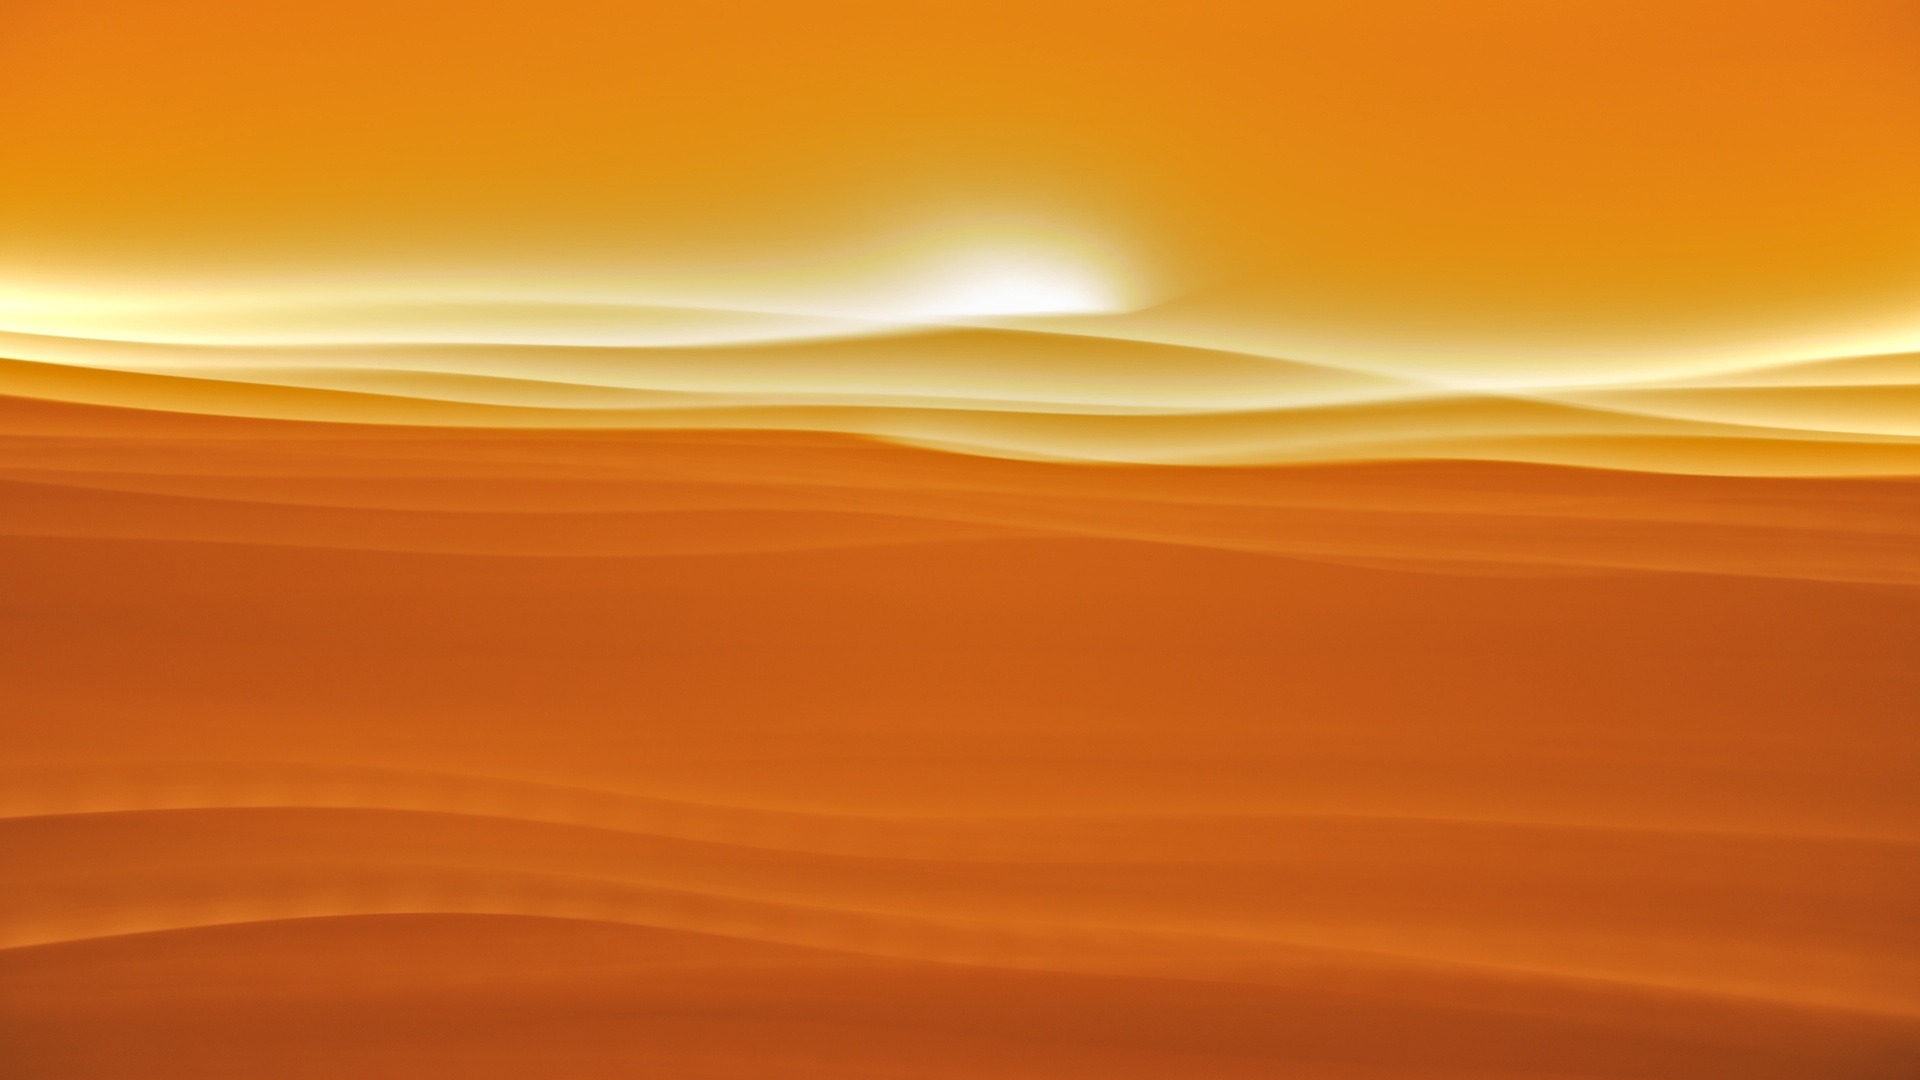 Desert sunlight for 1920 x 1080 HDTV 1080p resolution